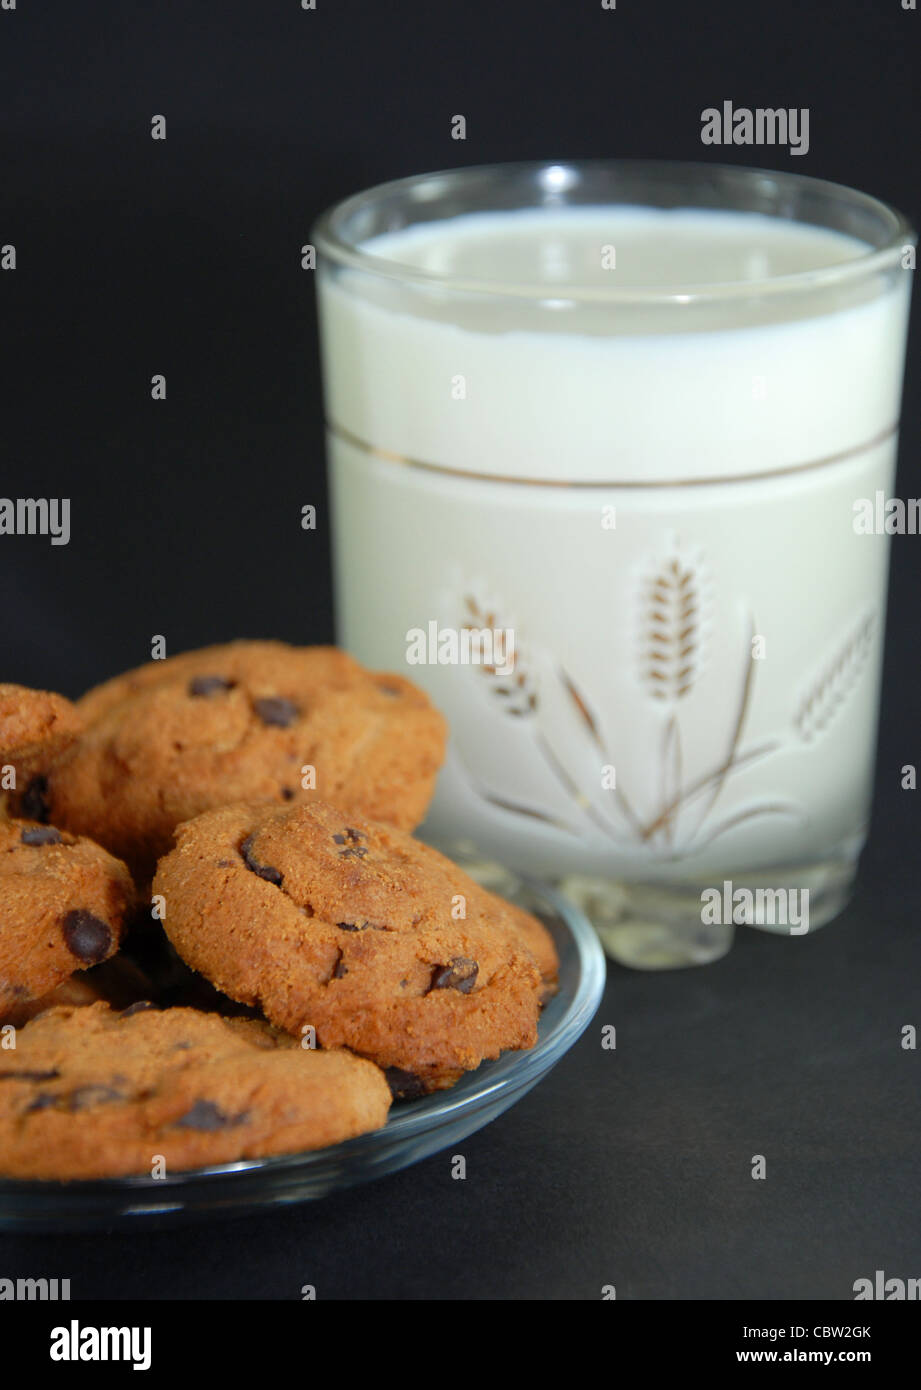 Galletas y leche inicio, servicial, sabrosa, la comida natural con vitaminas Foto de stock